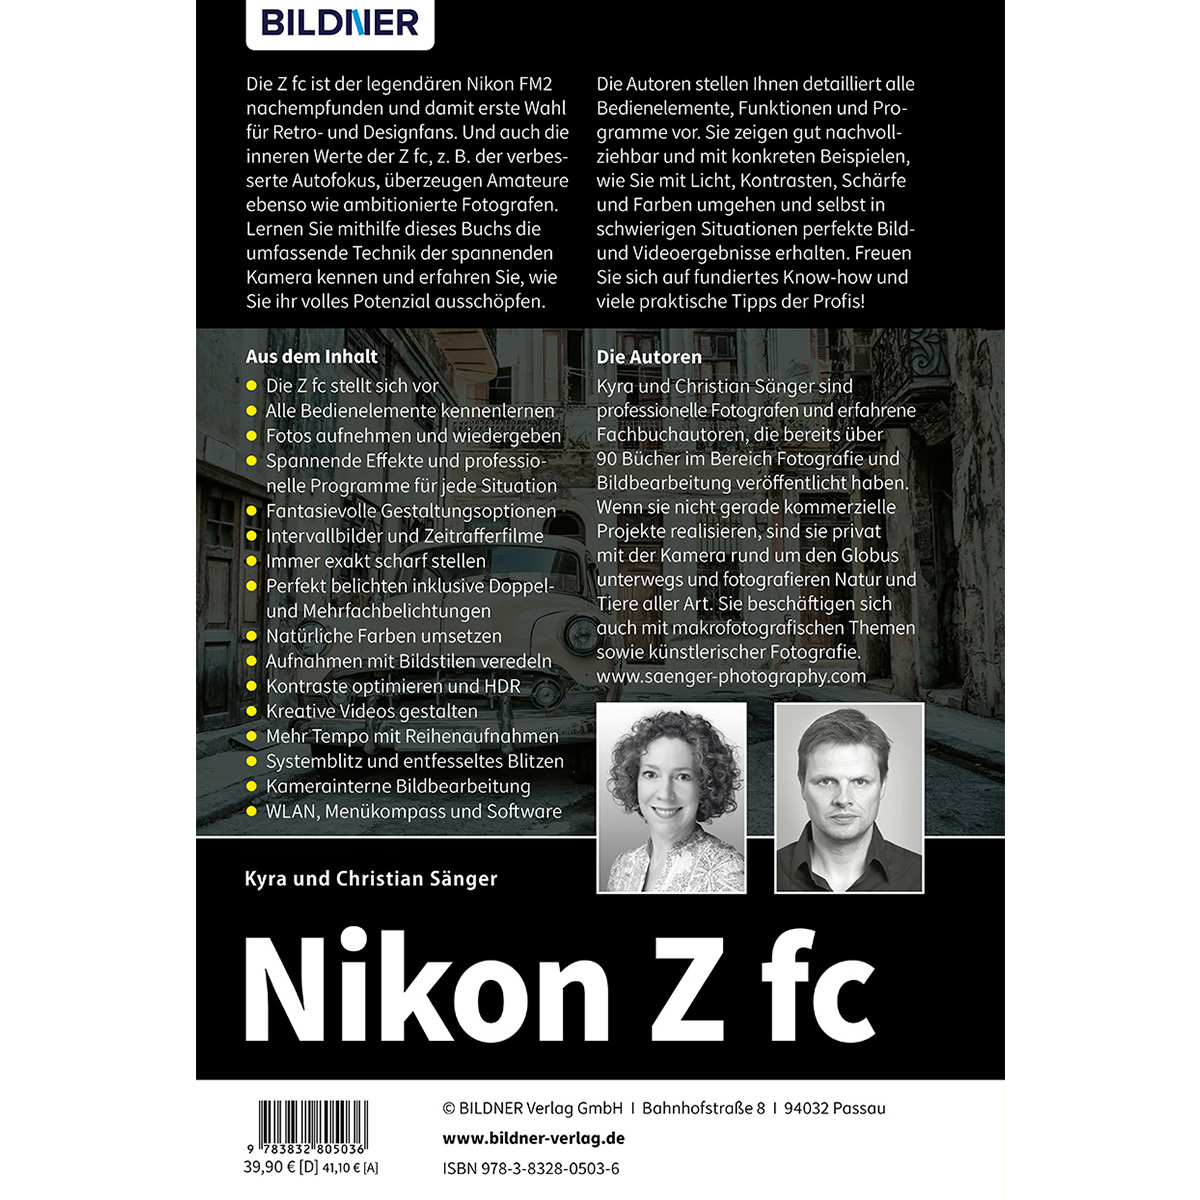 Das - Kamera Z Ihrer umfangreiche fc Nikon zu Praxisbuch